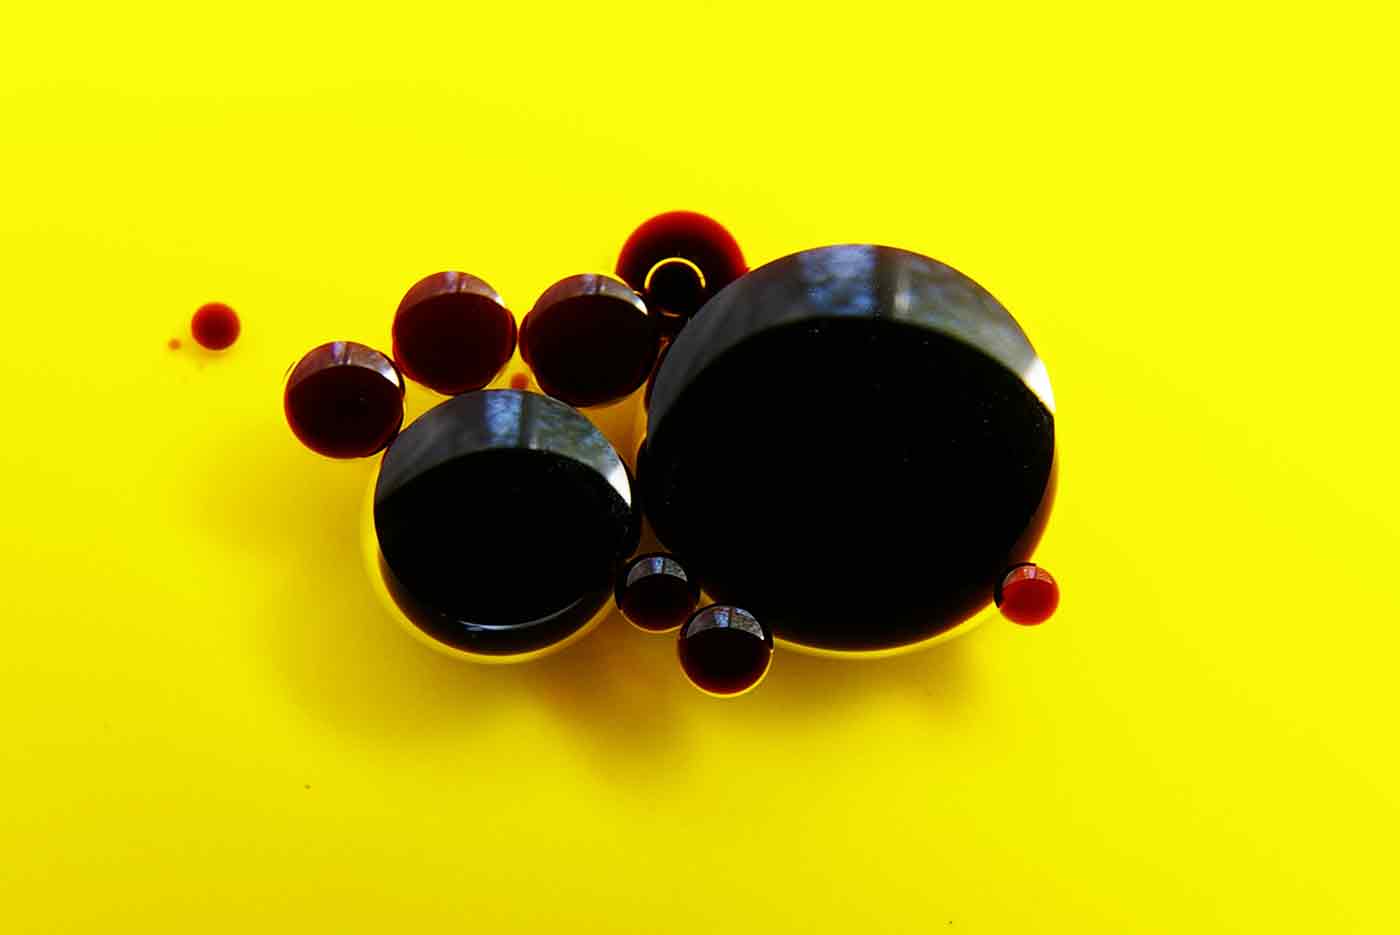 Vinegar droplets on oil.